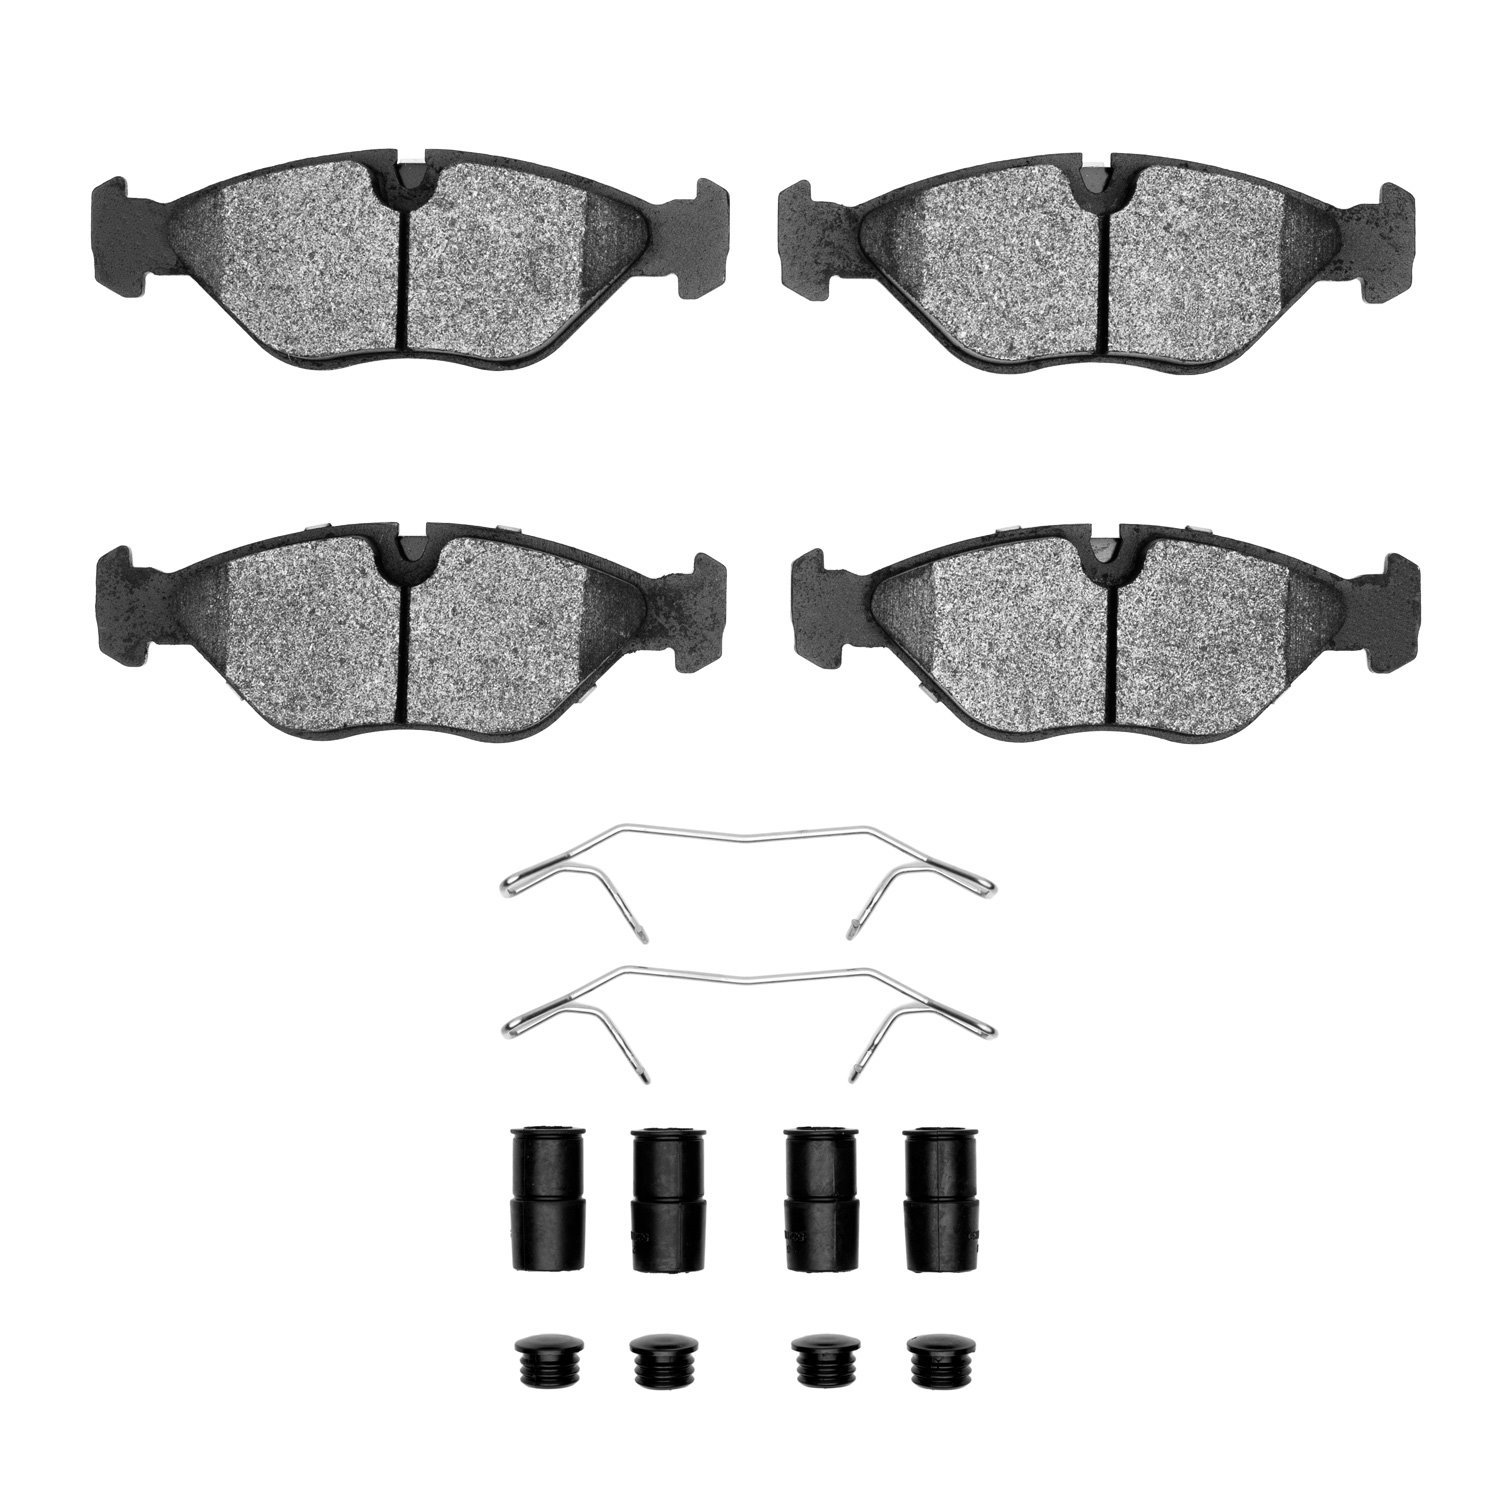 Euro Ceramic Brake Pads & Hardware Kit, 1988-1998 GM, Position: Front